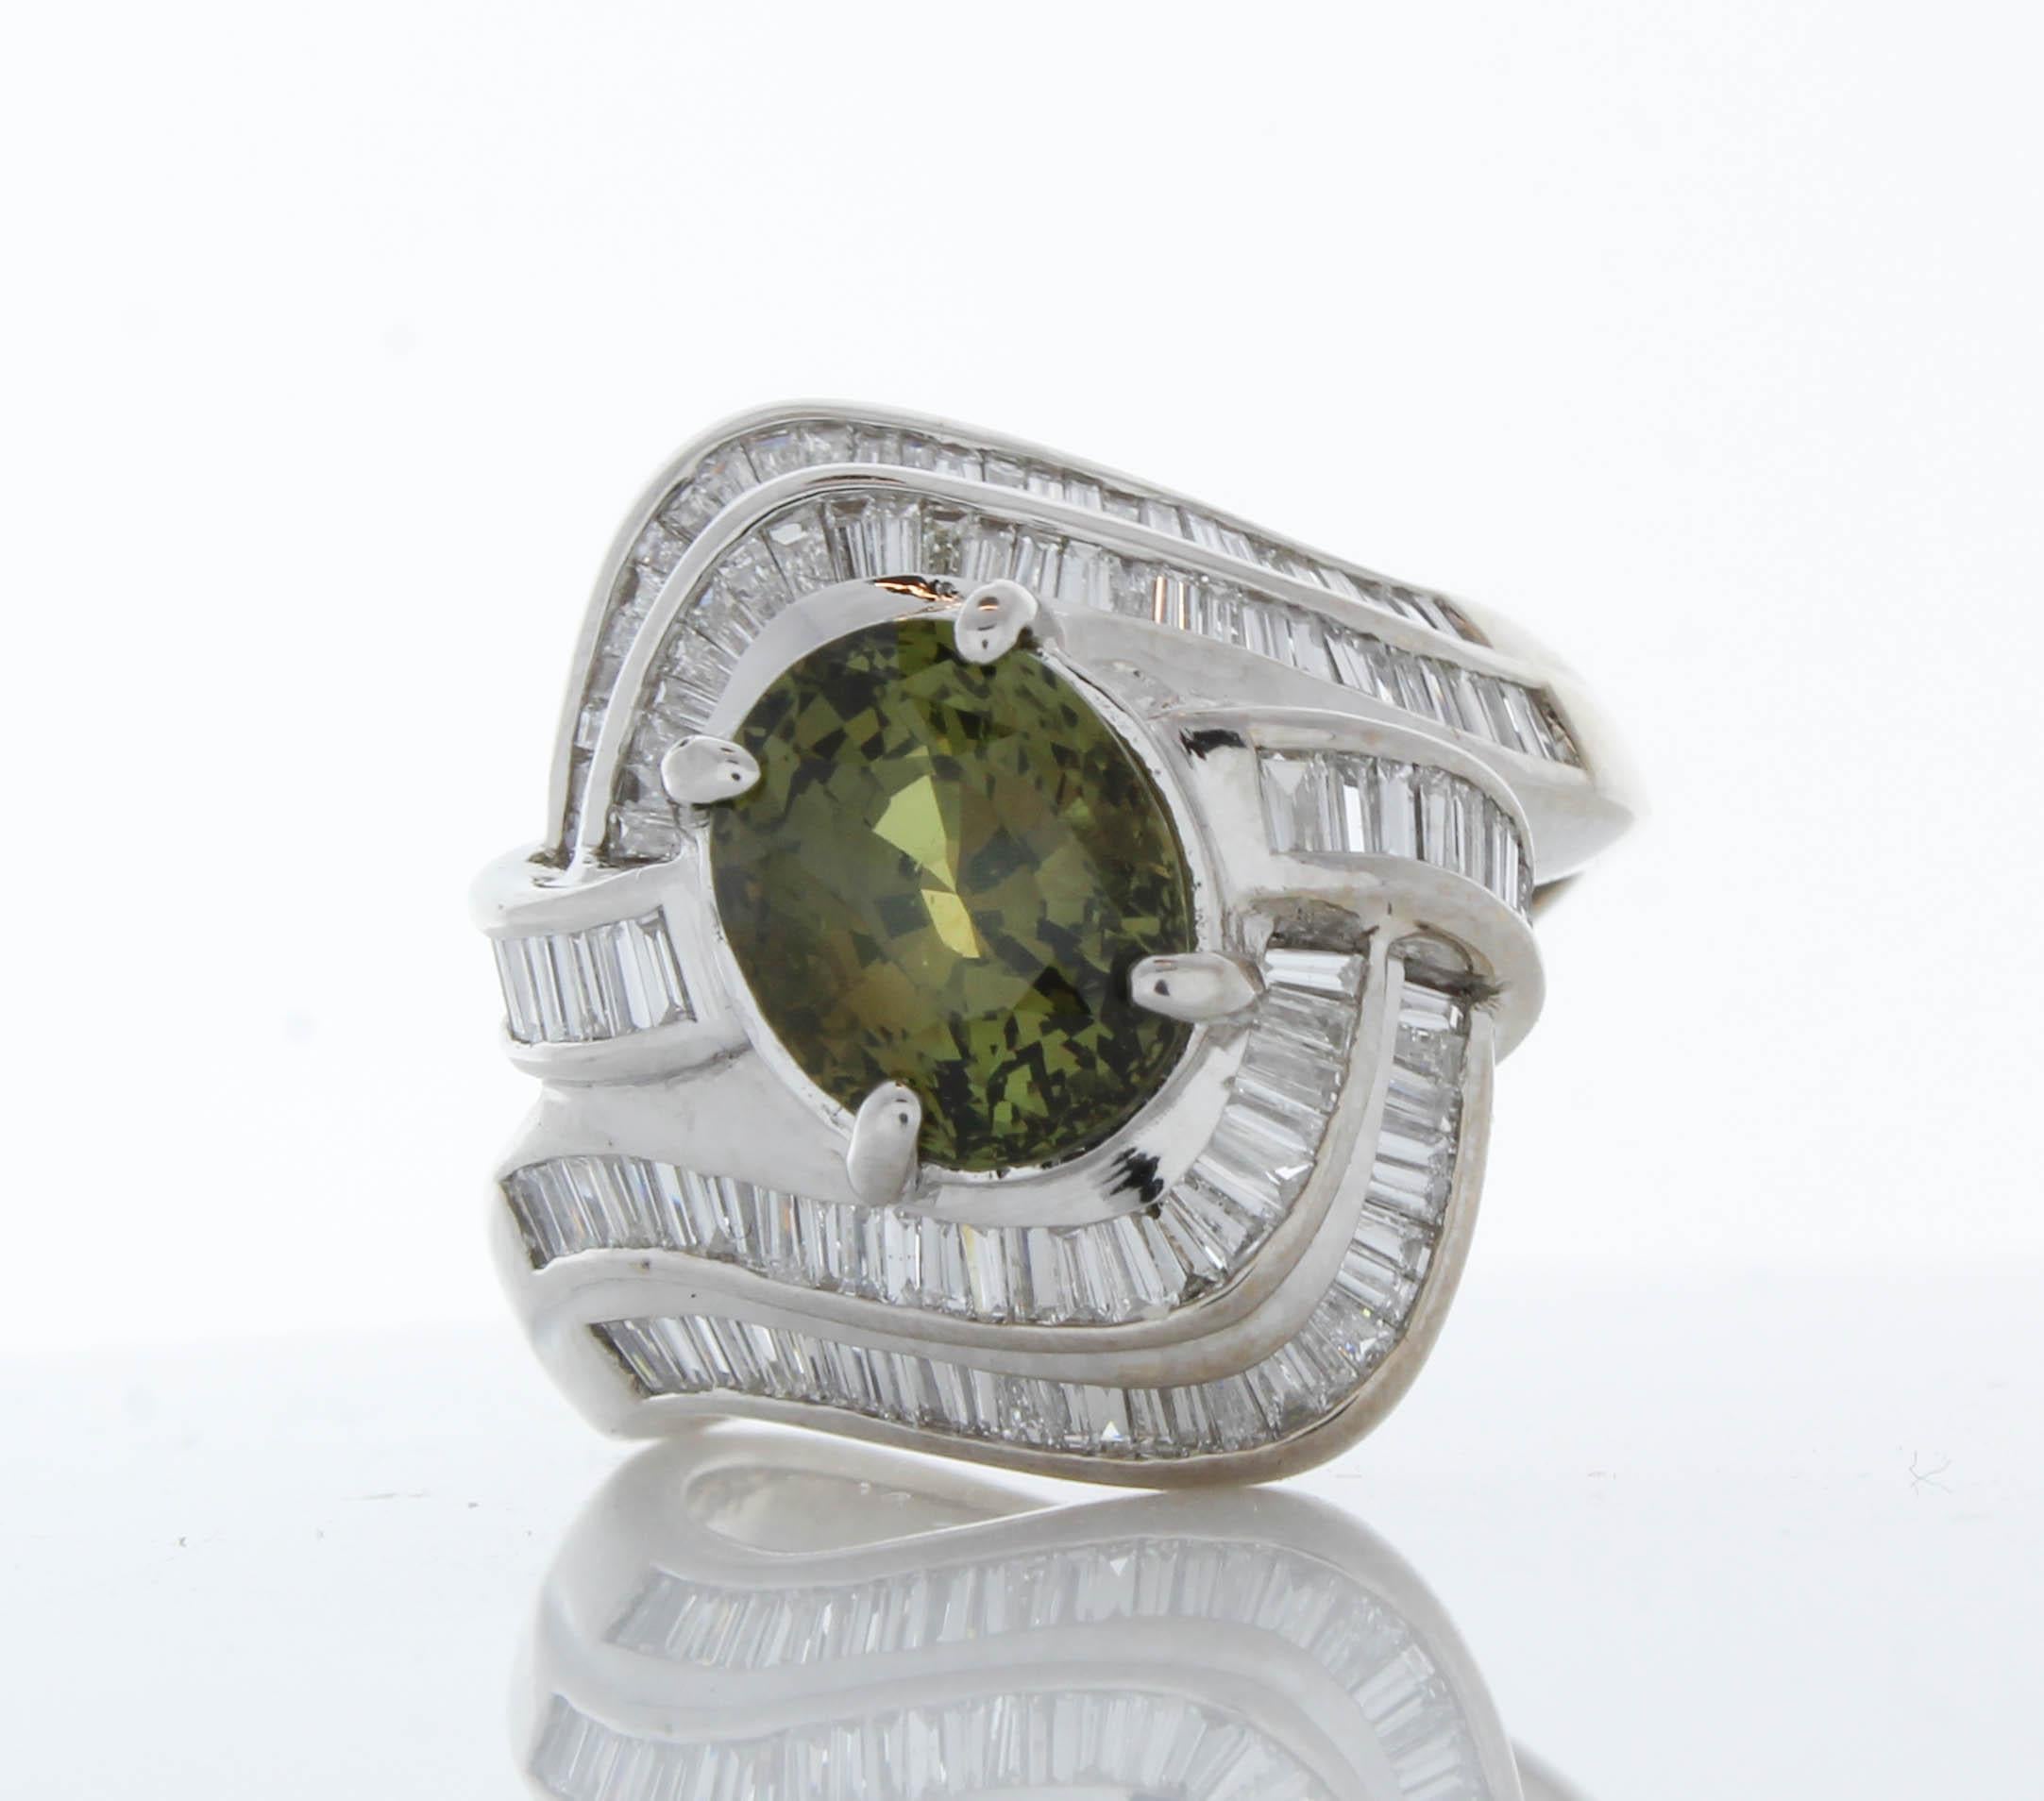 Dieser Ring erfreut das Auge mit einem kräftigen grünen Farbtupfer. Er ist mit einem reich gesättigten grünen Smaragd von 0,69 Karat besetzt. Dieser Edelstein ist mit 2,20 Karat Gesamtgewicht aus Diamanten im konischen Baguetteschliff besetzt. Der